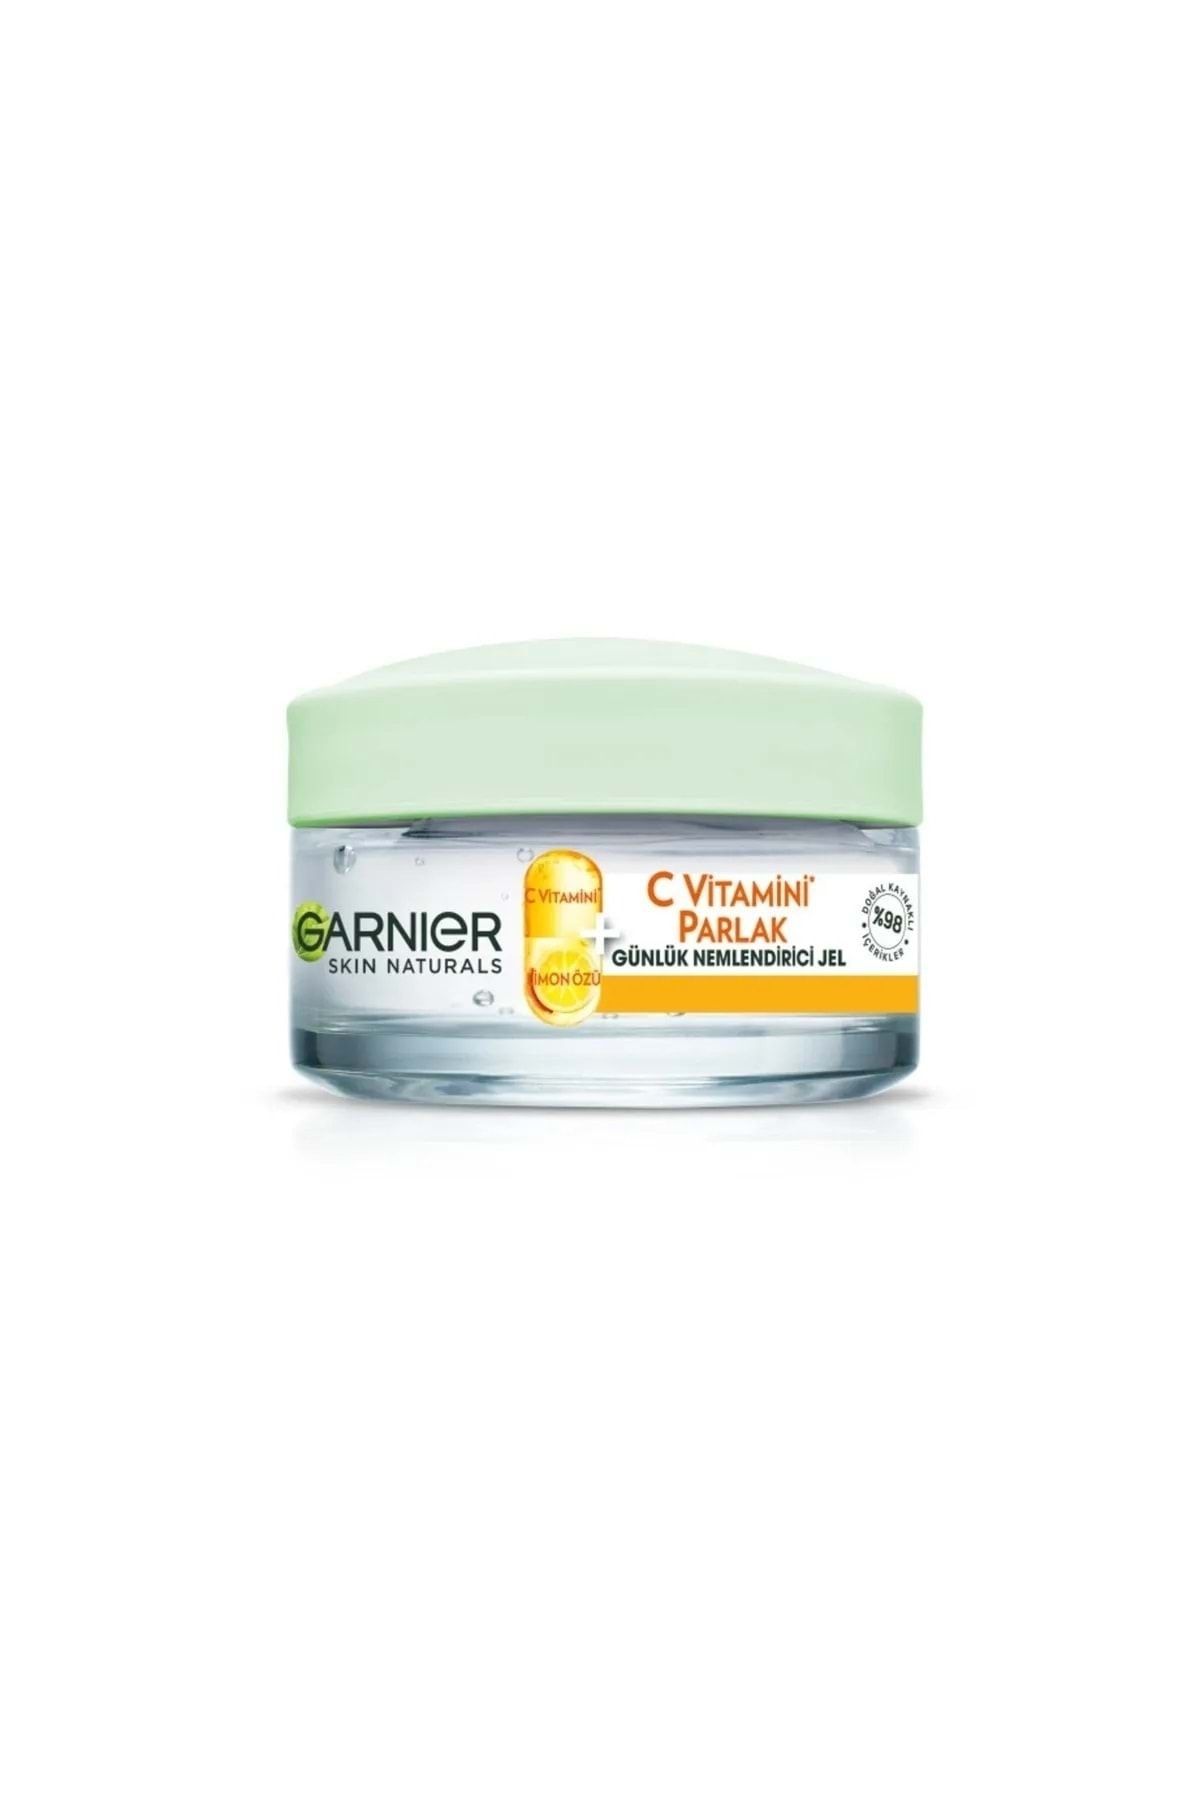 Garnier C Vitamini Parlak Günlük Nemlendirici Jel - - 50 ml